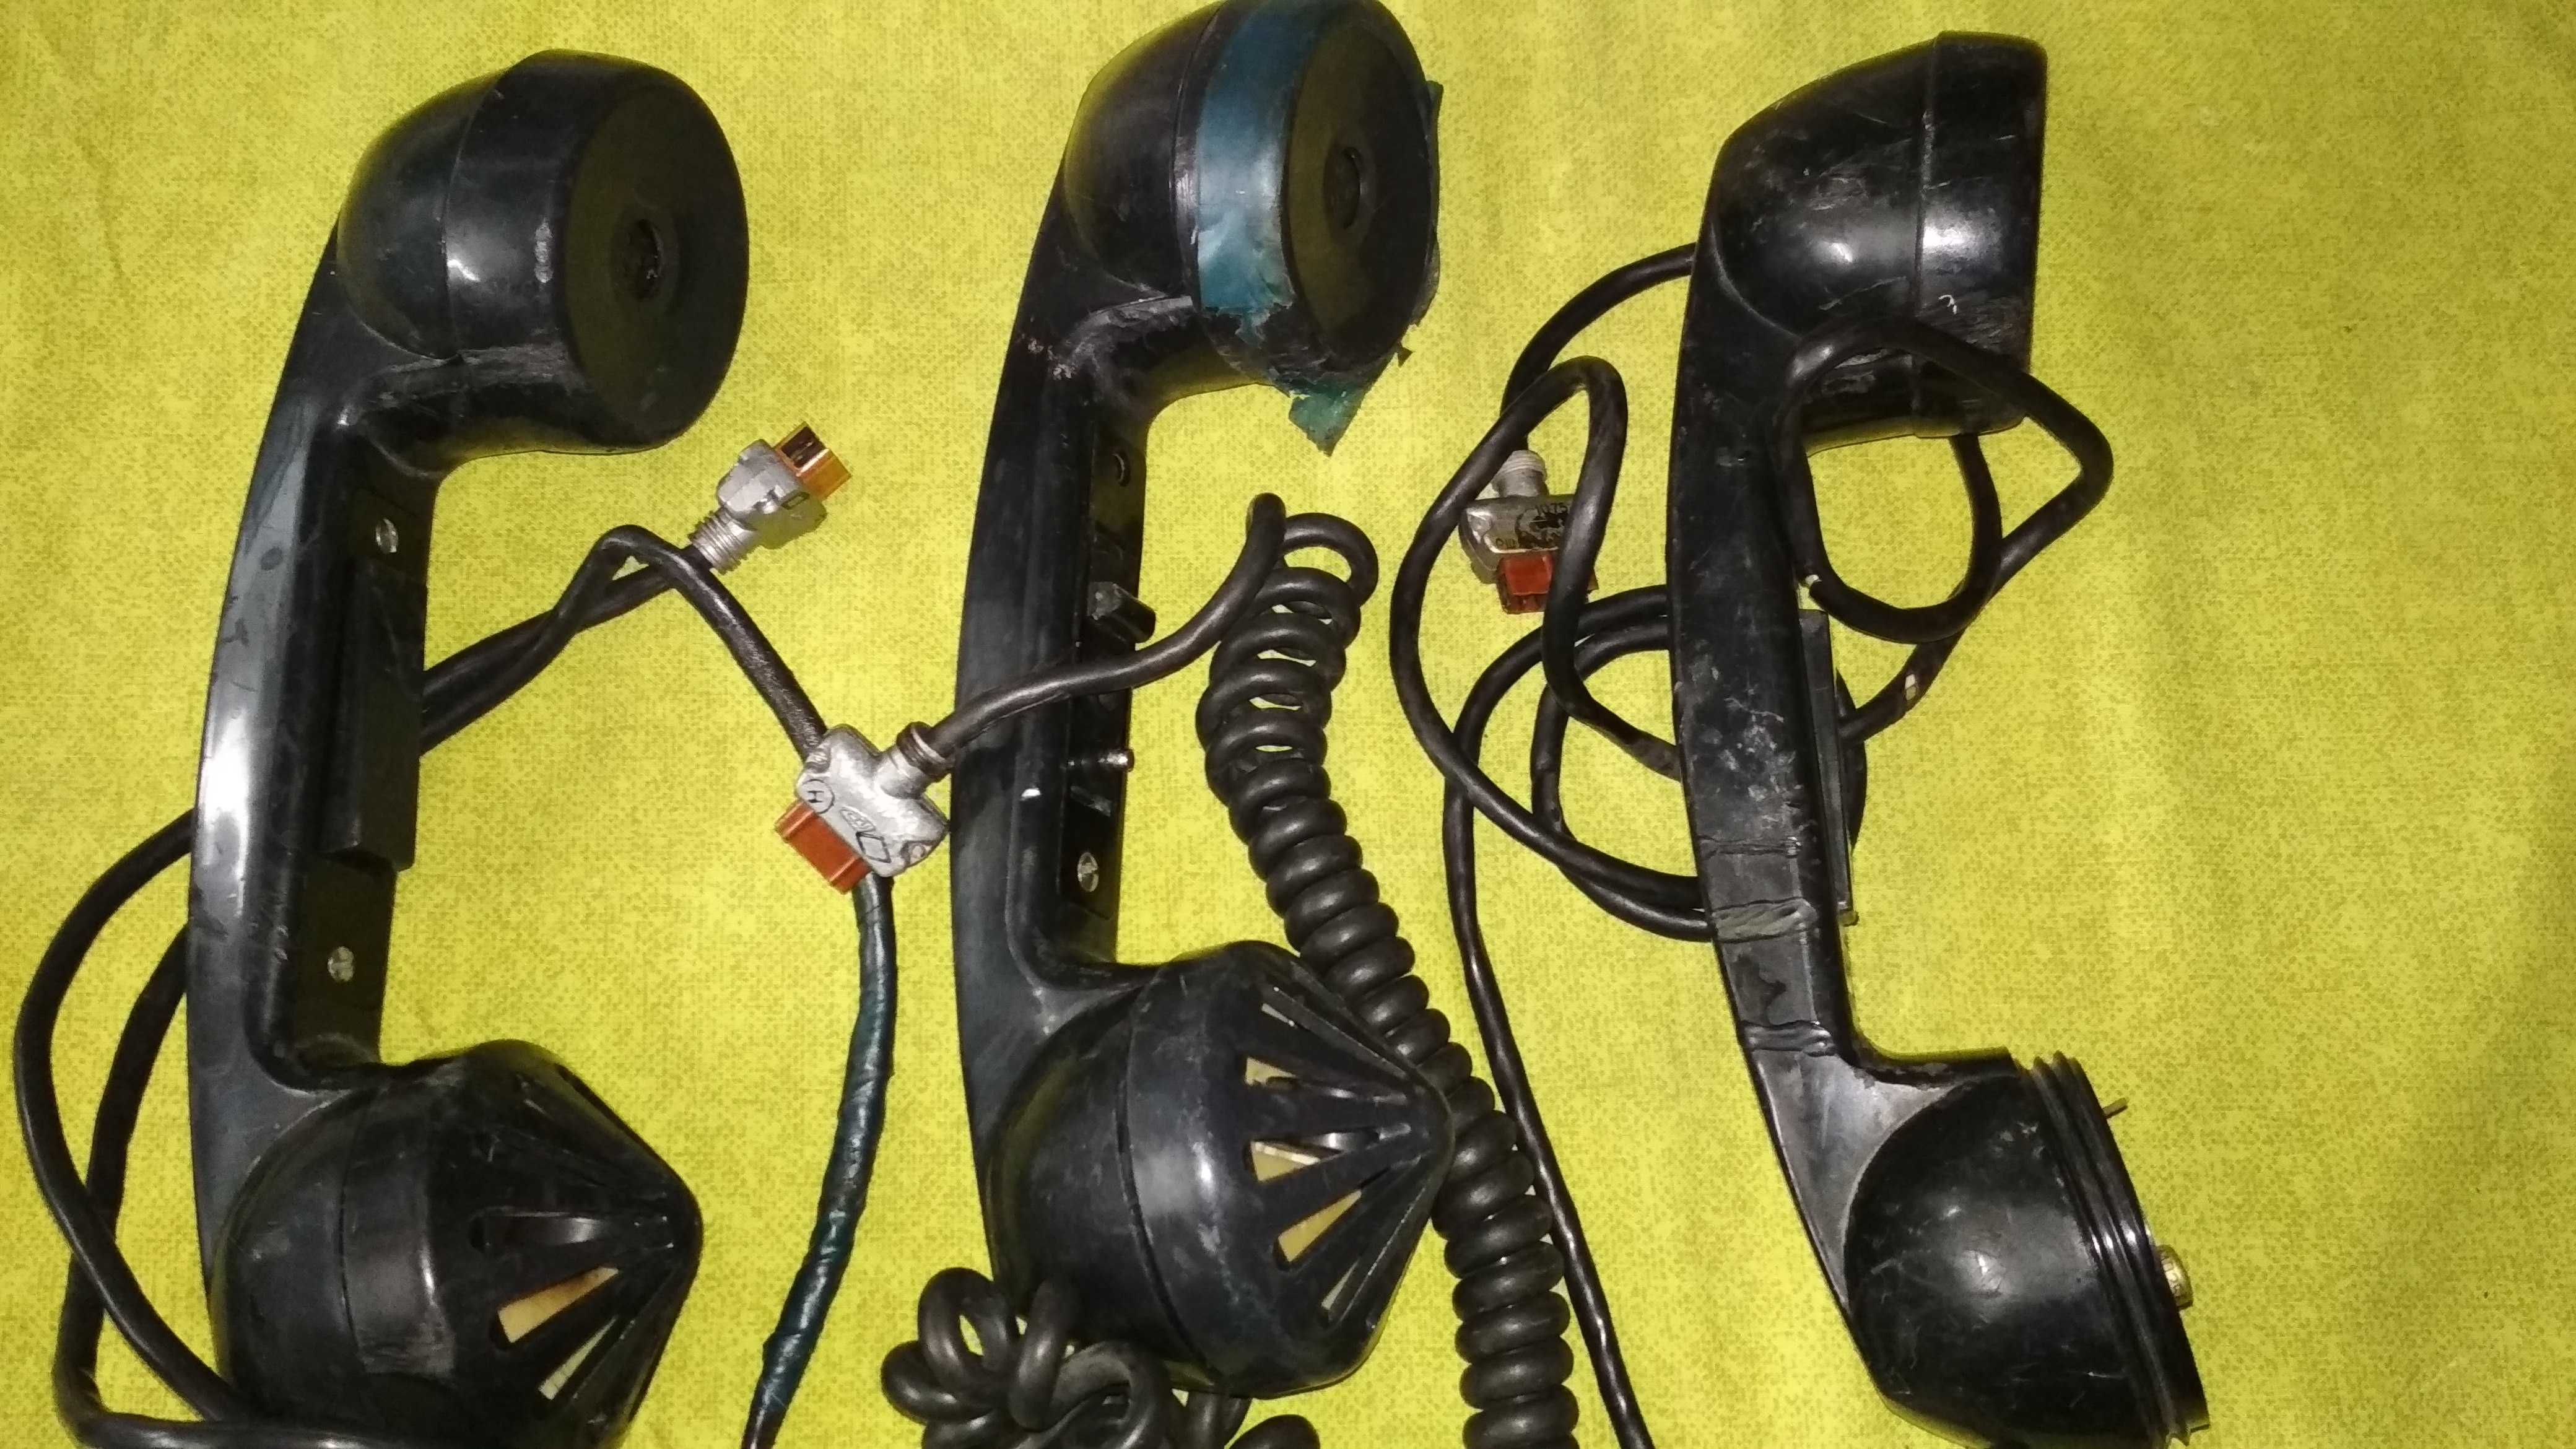 Трубка телефонная для связи радио элементы СССР